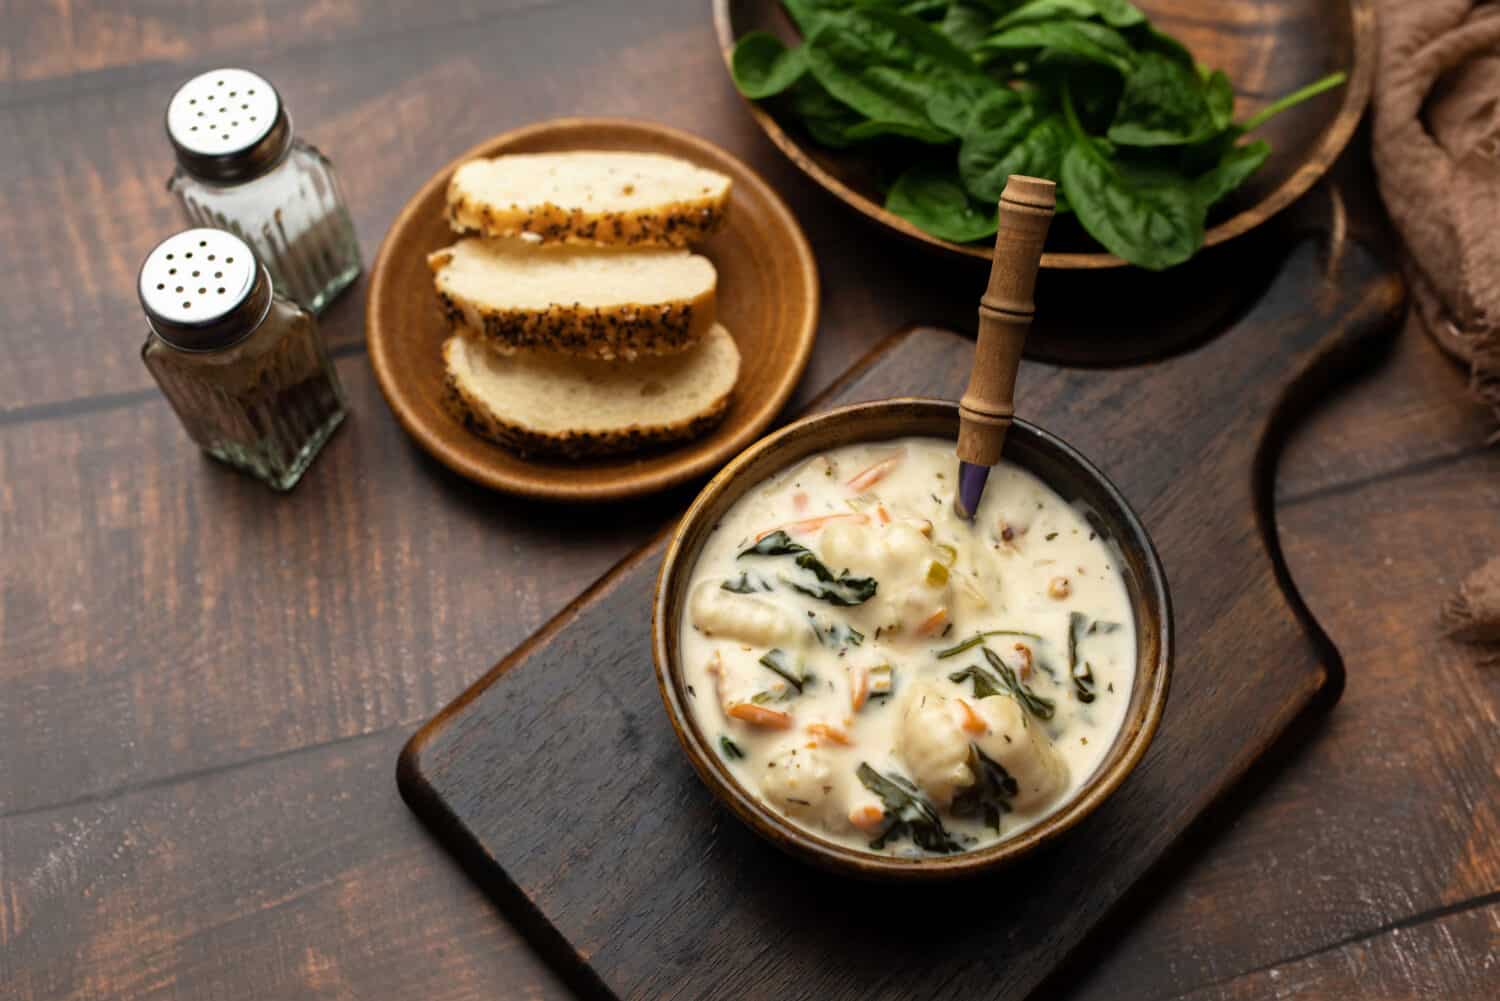 Homemade Italian cream soup with potato gnocchi, Traditional Italian chicken gnocchi